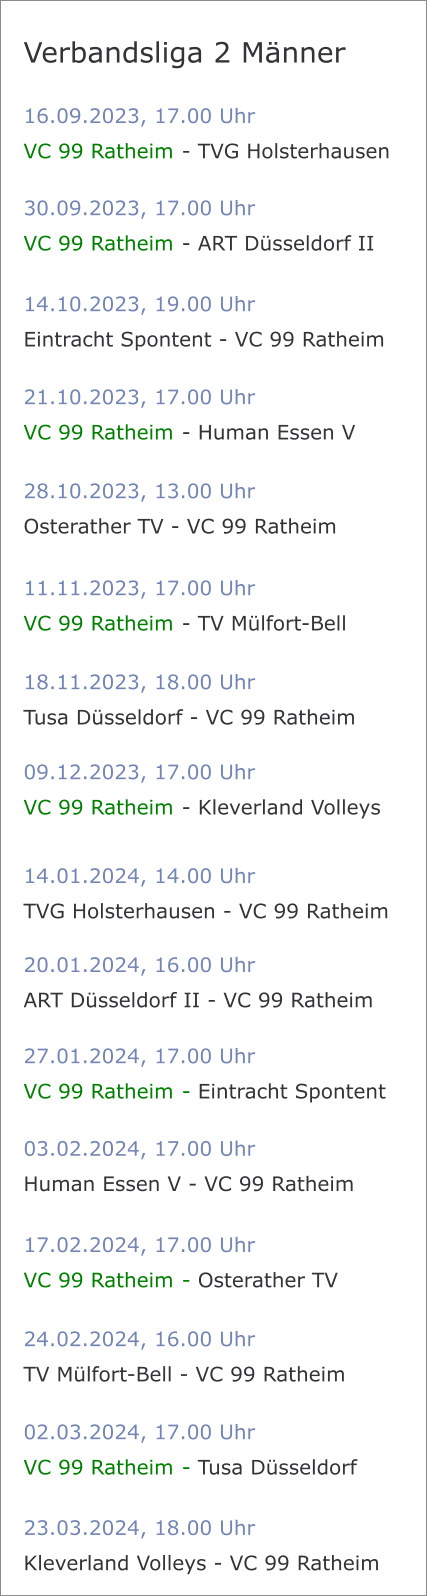 16.09.2023, 17.00 Uhr VC 99 Ratheim	 - TVG Holsterhausen Verbandsliga 2 Männer 30.09.2023, 17.00 Uhr VC 99 Ratheim	 - ART Düsseldorf II 14.10.2023, 19.00 Uhr Eintracht Spontent - VC 99 Ratheim	 21.10.2023, 17.00 Uhr VC 99 Ratheim	 - Human Essen V 28.10.2023, 13.00 Uhr Osterather TV - VC 99 Ratheim	 11.11.2023, 17.00 Uhr VC 99 Ratheim	 - TV Mülfort-Bell 18.11.2023, 18.00 Uhr Tusa Düsseldorf - VC 99 Ratheim	 09.12.2023, 17.00 Uhr VC 99 Ratheim	 - Kleverland Volleys 14.01.2024, 14.00 Uhr TVG Holsterhausen - VC 99 Ratheim 20.01.2024, 16.00 Uhr ART Düsseldorf II - VC 99 Ratheim 27.01.2024, 17.00 Uhr VC 99 Ratheim	 - Eintracht Spontent 03.02.2024, 17.00 Uhr Human Essen V - VC 99 Ratheim 17.02.2024, 17.00 Uhr VC 99 Ratheim	 - Osterather TV 24.02.2024, 16.00 Uhr TV Mülfort-Bell - VC 99 Ratheim 02.03.2024, 17.00 Uhr VC 99 Ratheim	 - Tusa Düsseldorf 23.03.2024, 18.00 Uhr Kleverland Volleys - VC 99 Ratheim